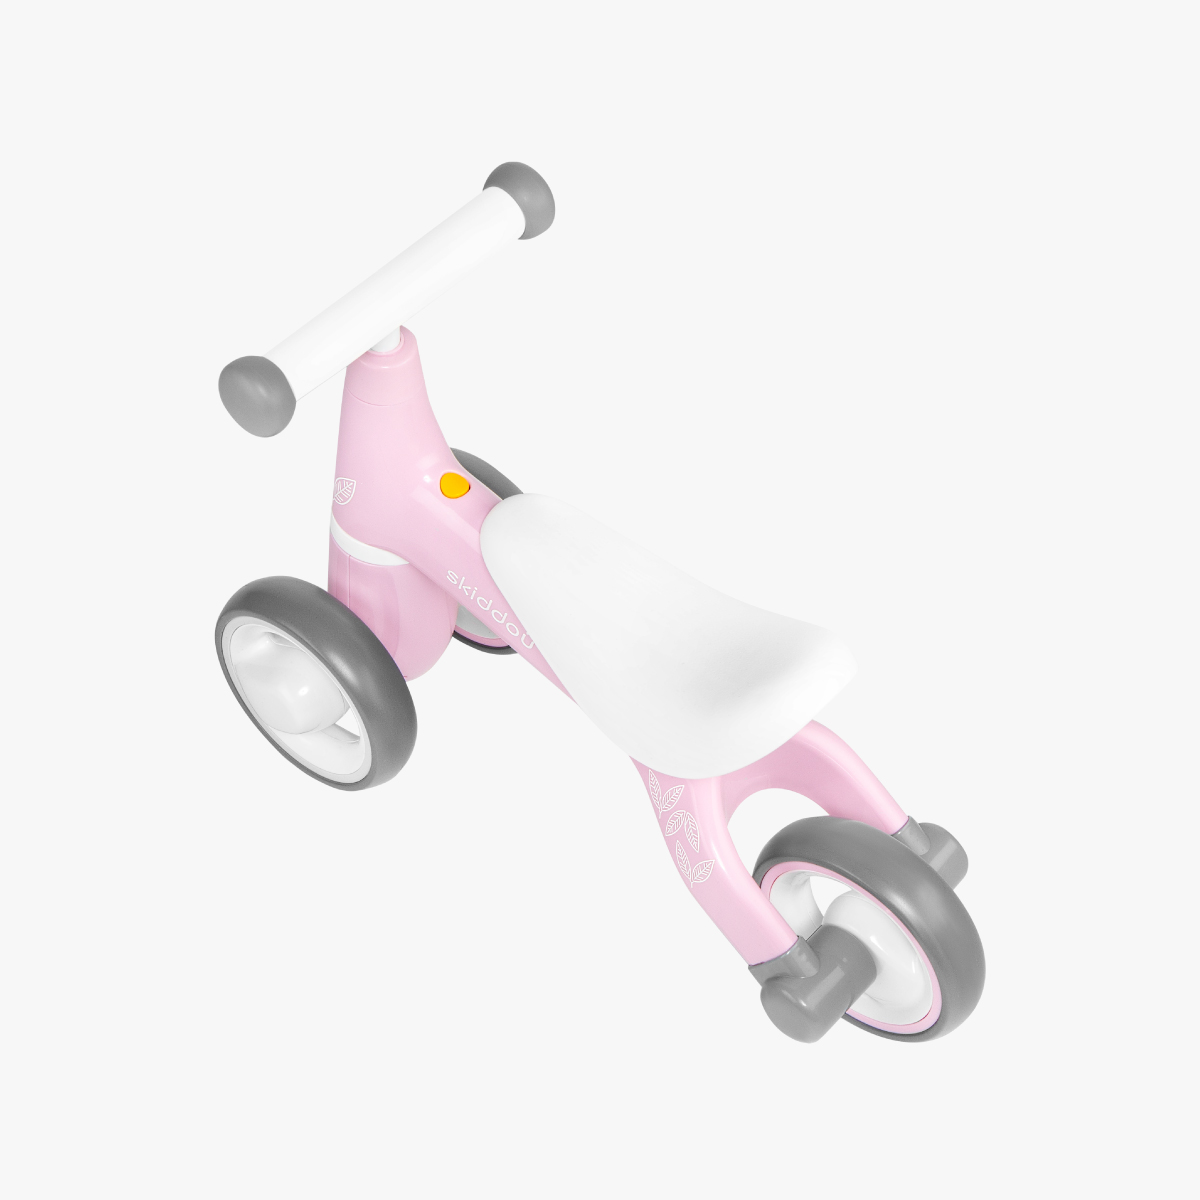 Lekki jeździk dla dzieci skiddou Berit keep pink